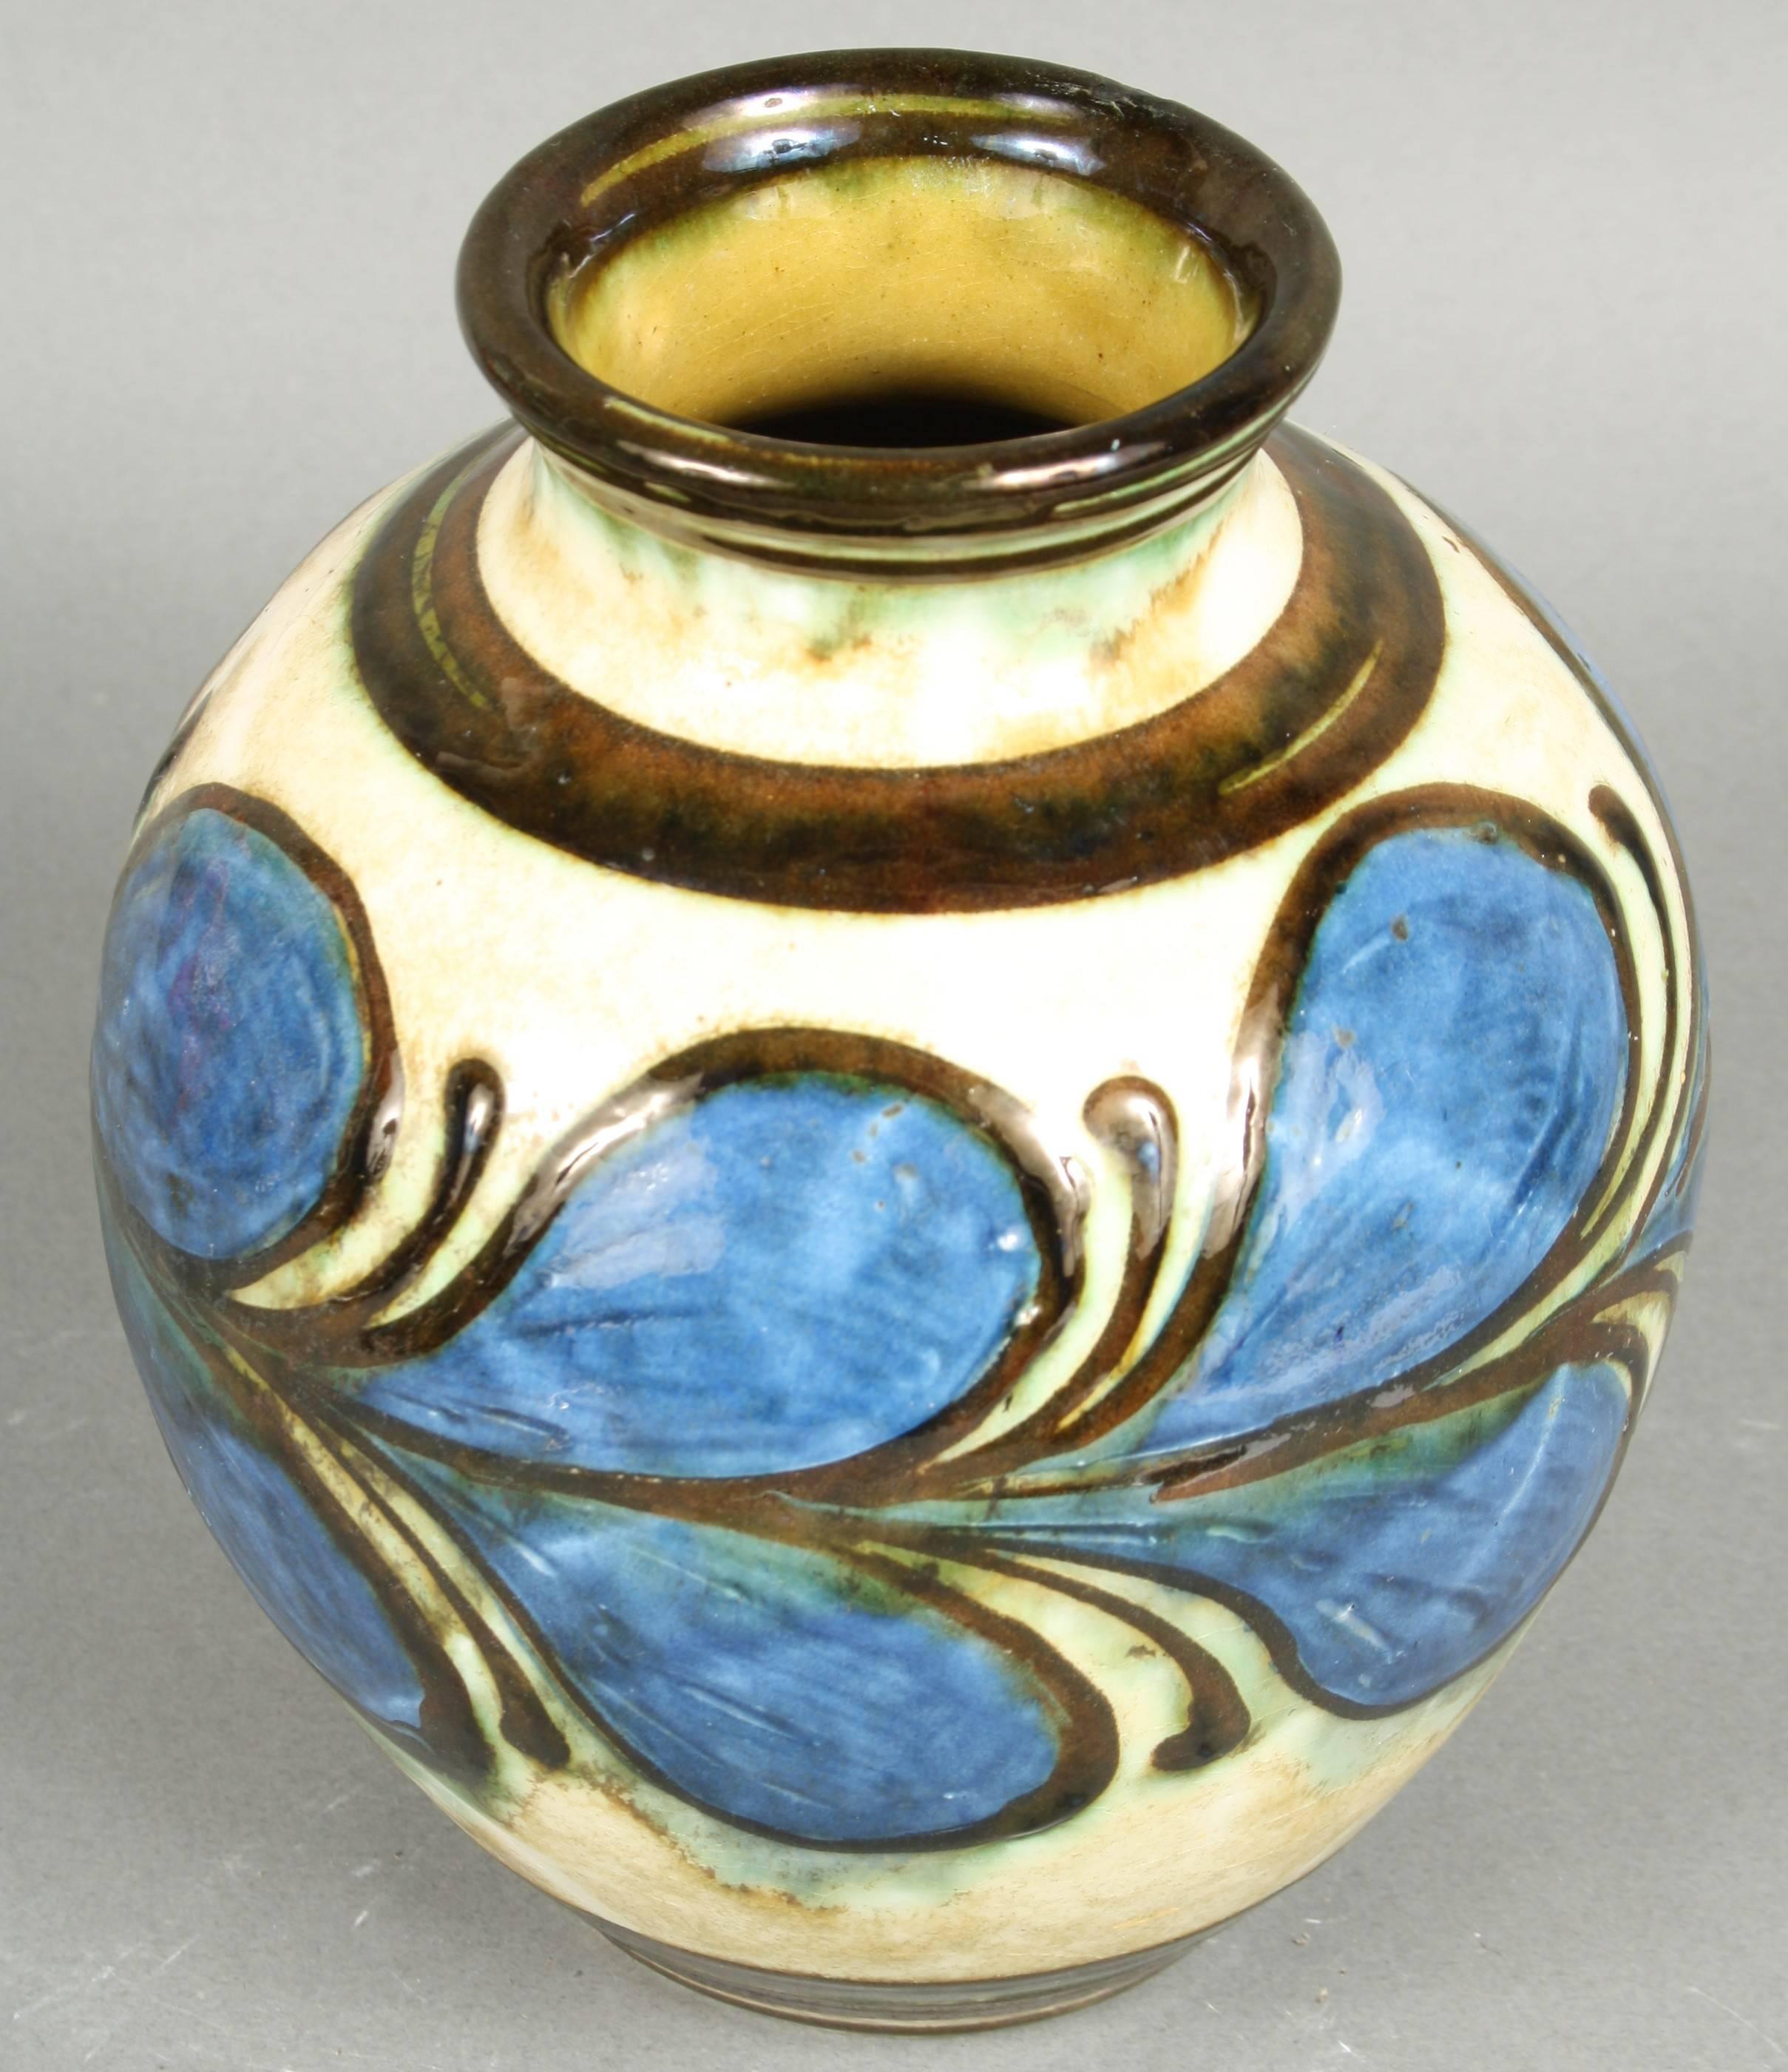 Scandinavian Modern Kähler, HAK, Glazed Stoneware Vase, 1930s, Blue and White, Denmark For Sale